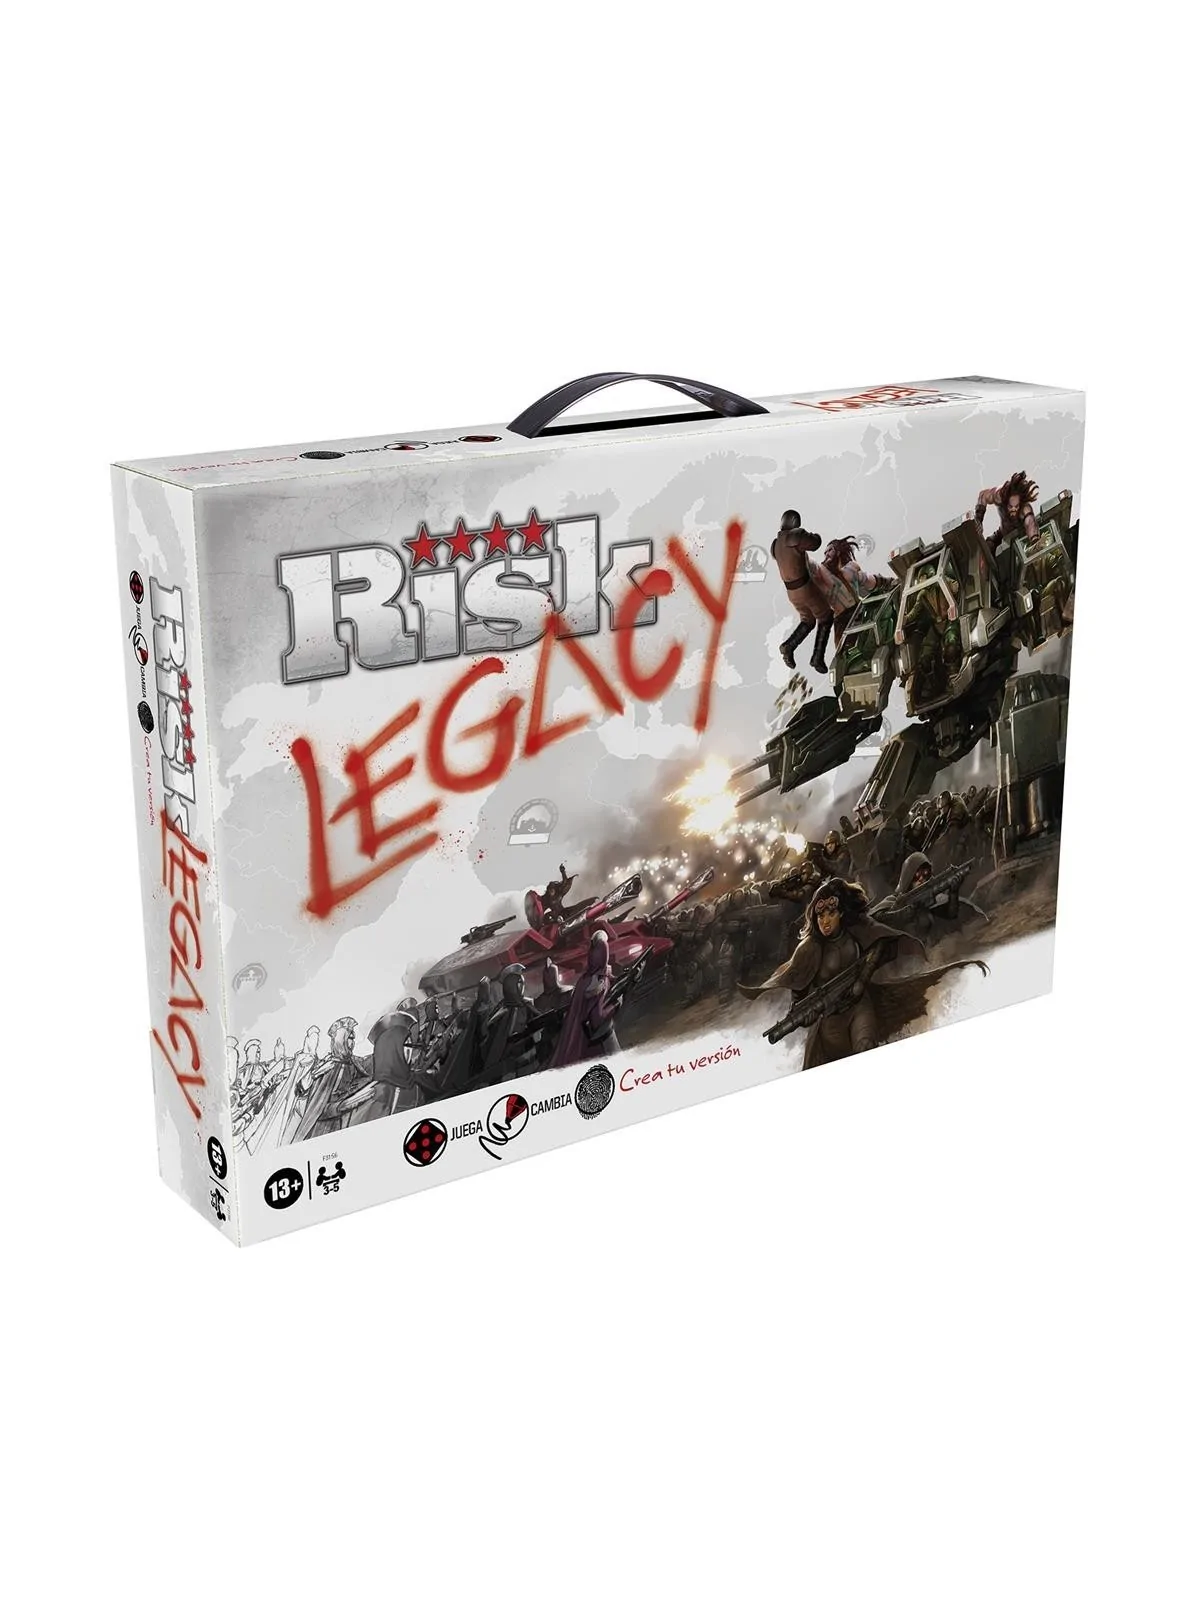 Comprar Risk Legacy barato al mejor precio 64,14 € de Hasbro